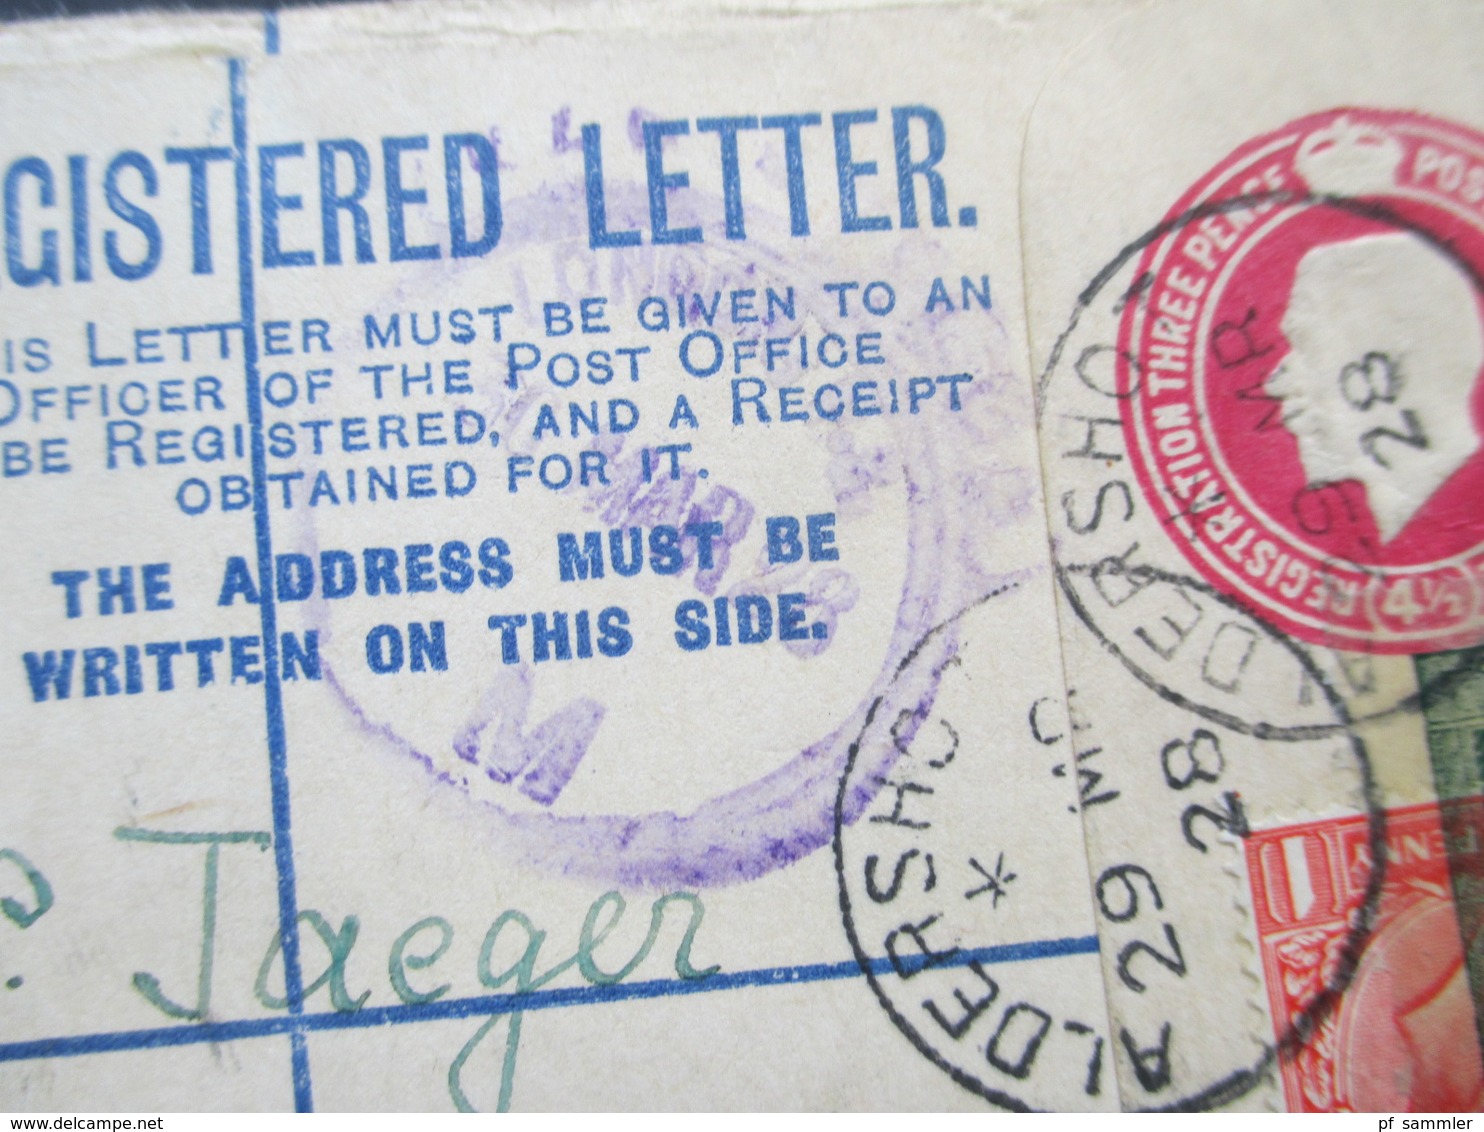 GB 1928 Registered Letter Aldershot No. 932 Nach Wien. Zusatzfrankatur Mit Vignette überklebt Kinderhilswerk Grado - Storia Postale